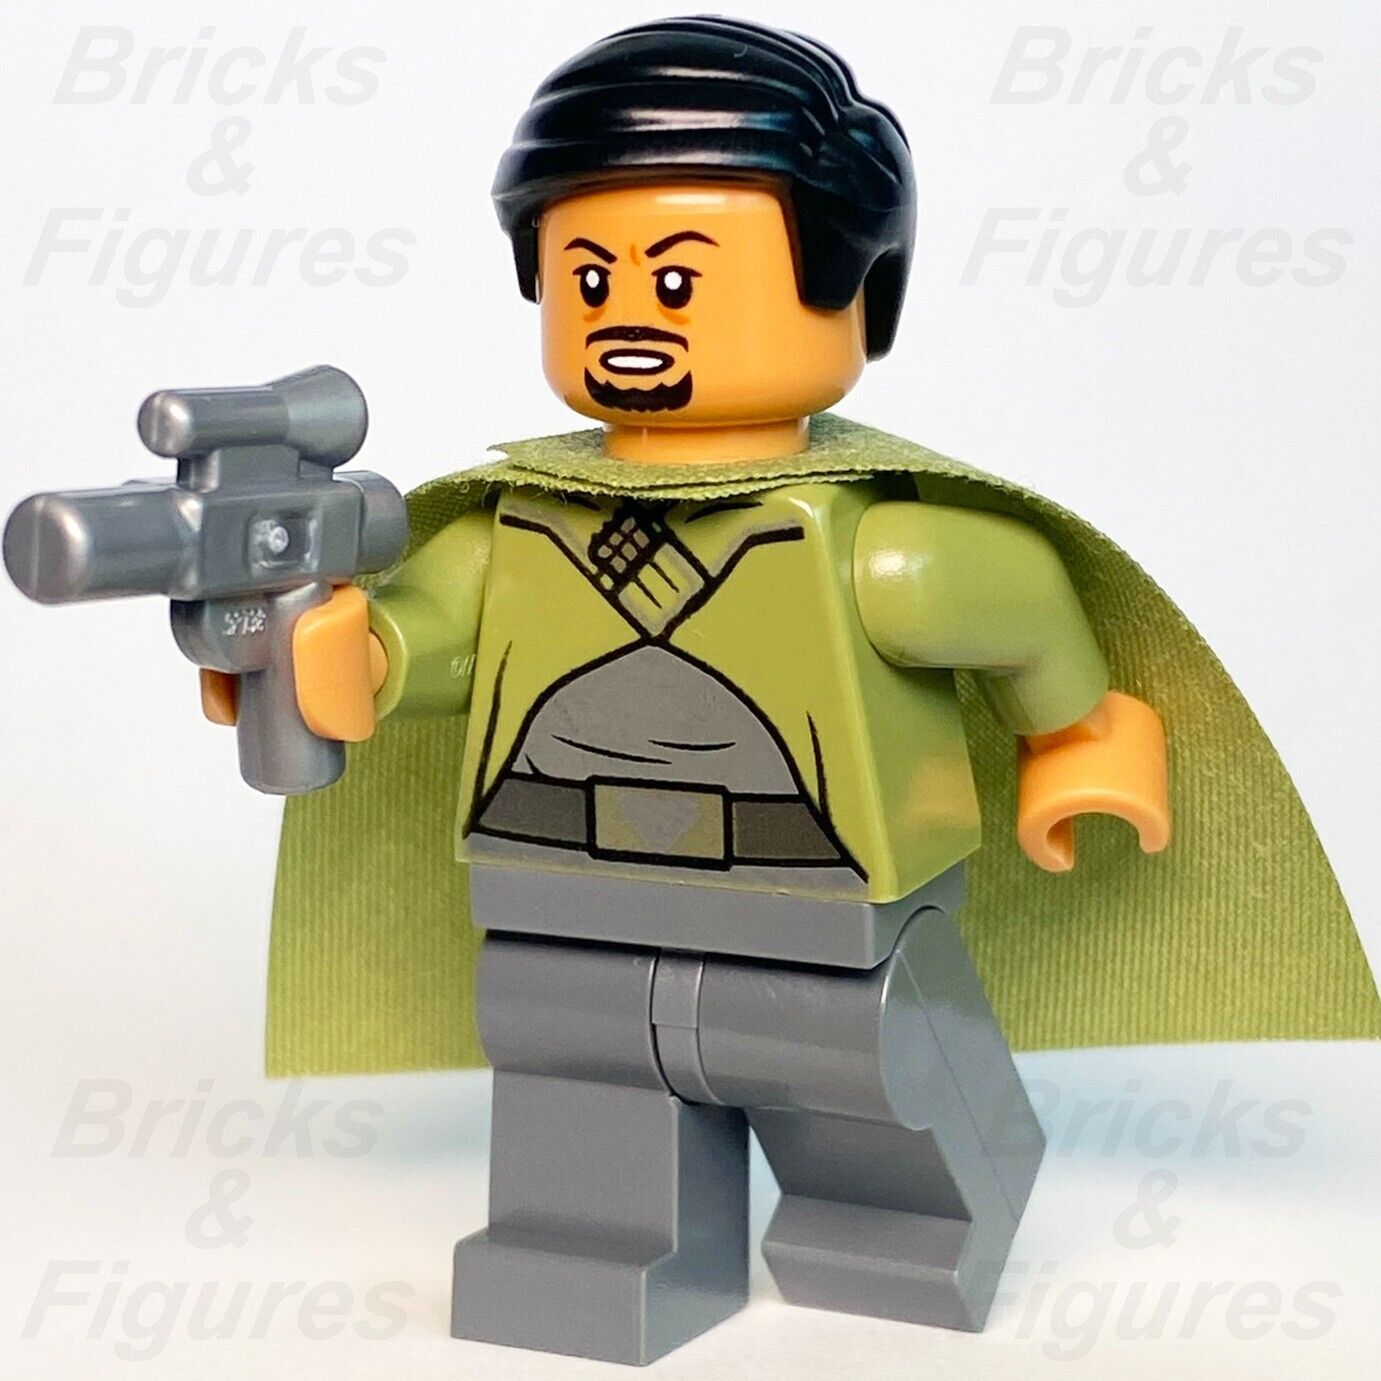 【純正大阪】【LEGO 純正品】75244 ベイル・オーガナ スターウォーズ レゴ 知育玩具